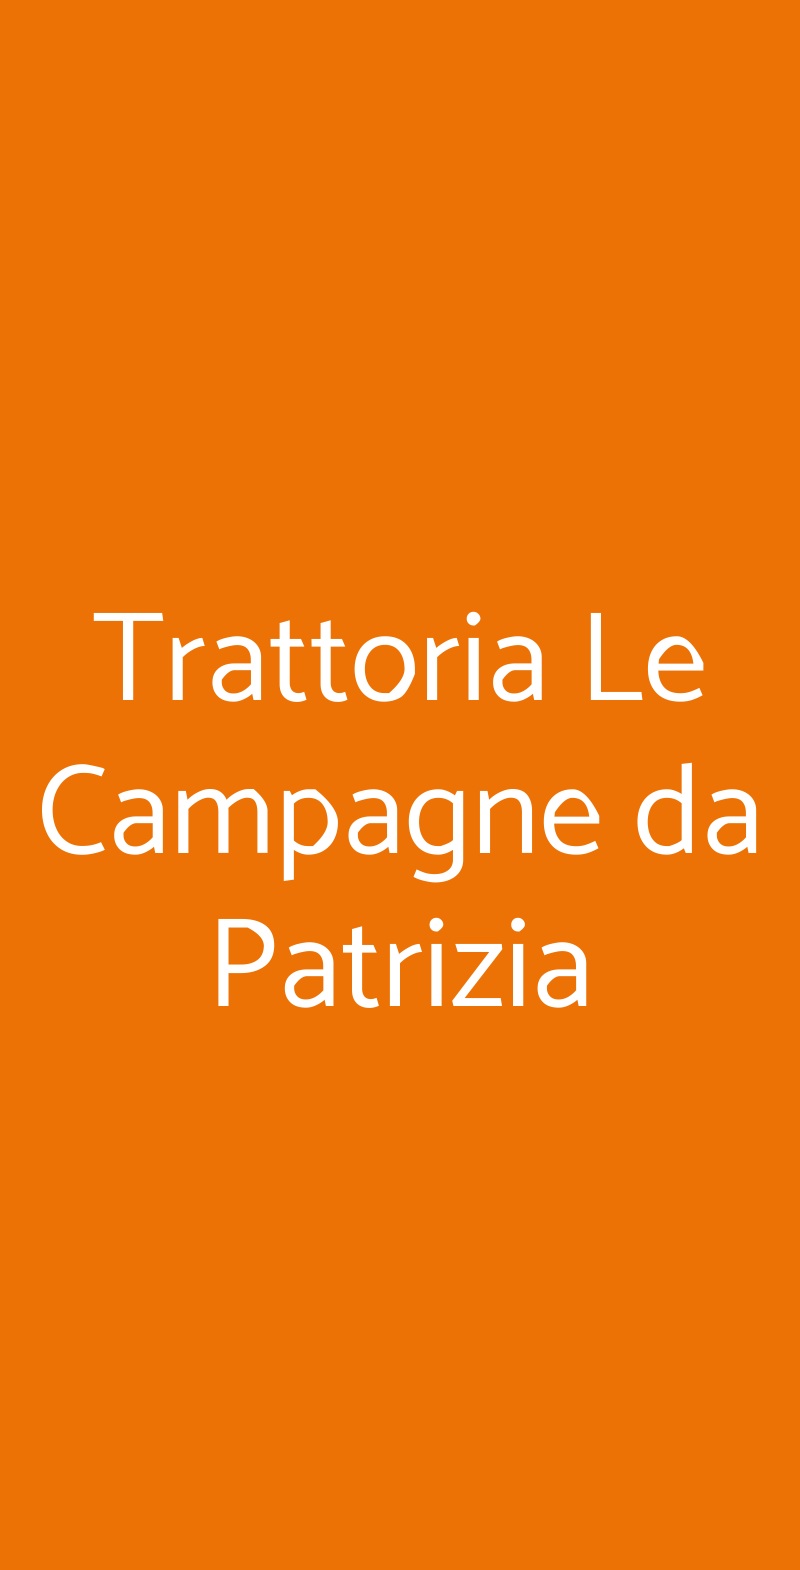 Trattoria Le Campagne da Patrizia Bovolone menù 1 pagina